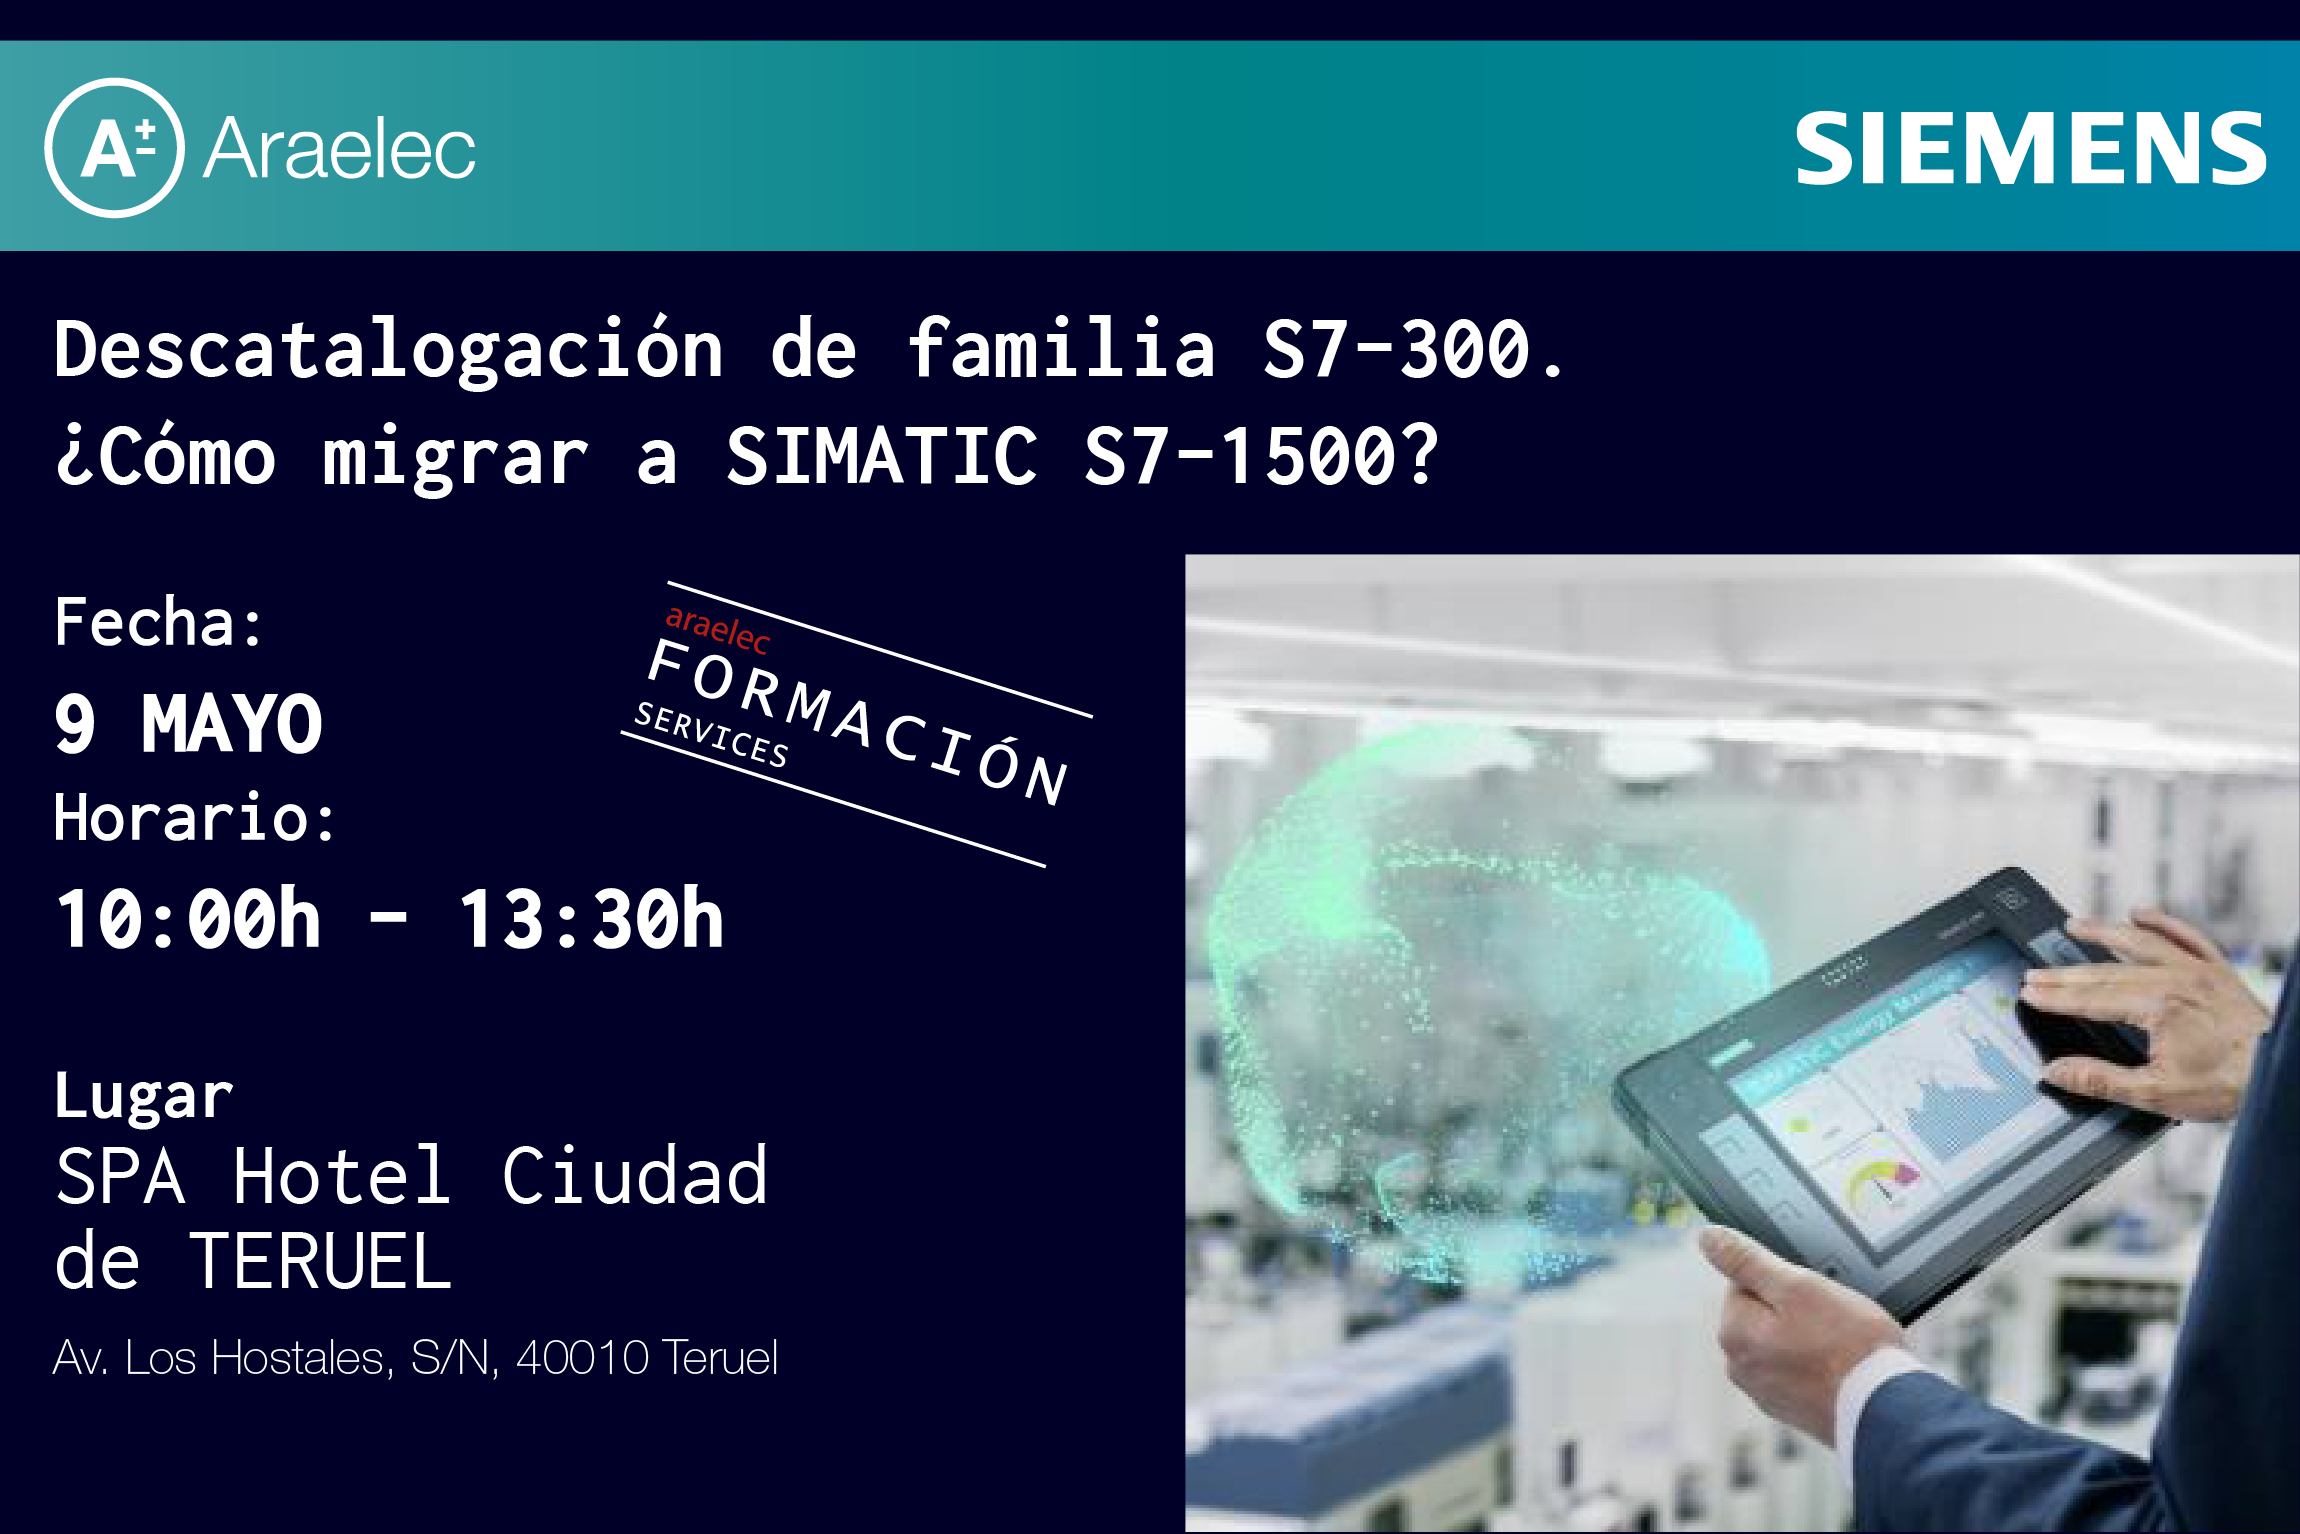 Descatalogación de familia s7-300 ¿Cómo migrar a SIMATIC S7-1500?